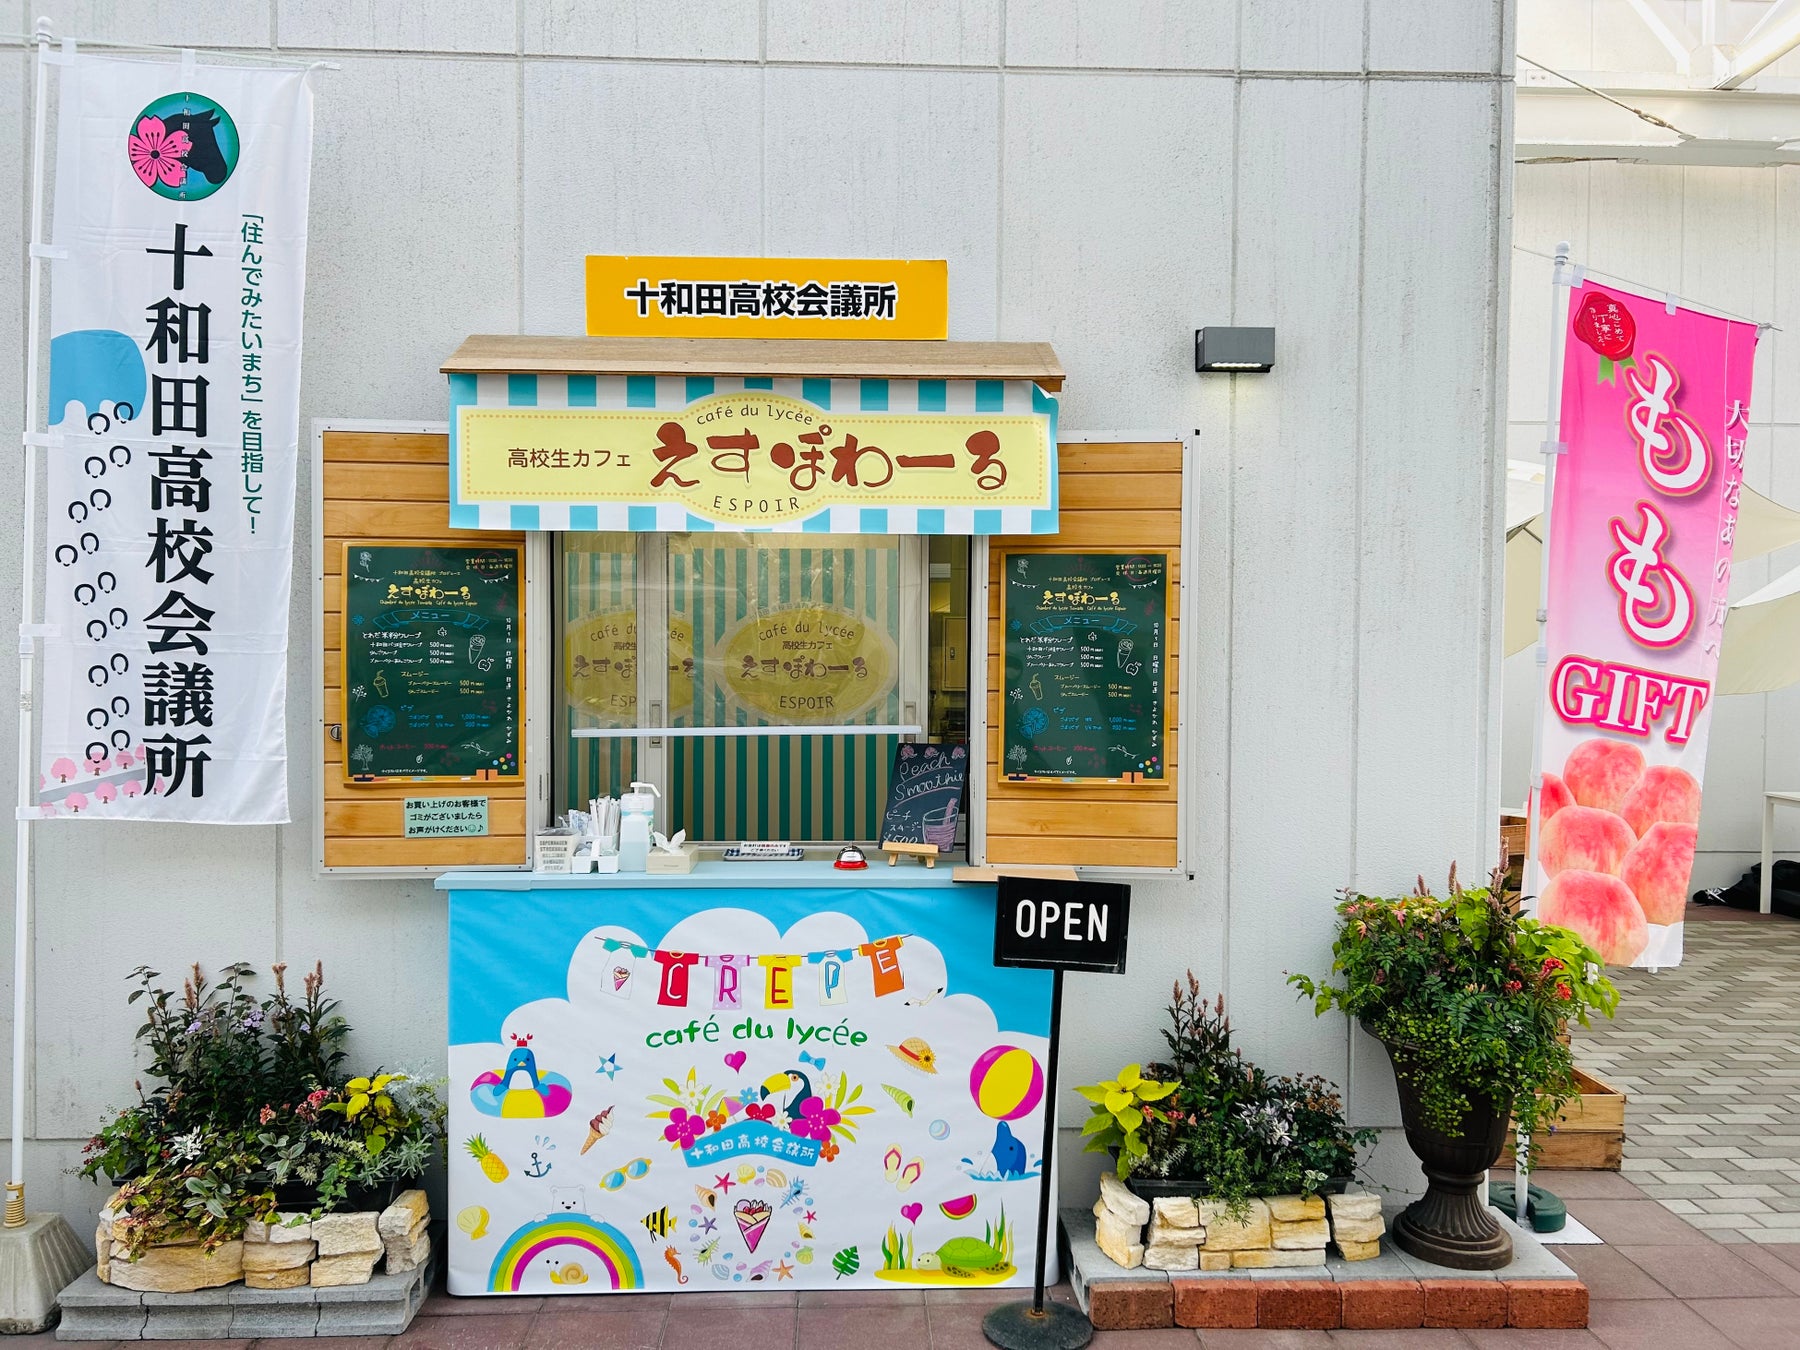 十和田市観光物産センター内にて、十和田産米粉100%のクレープ発売。